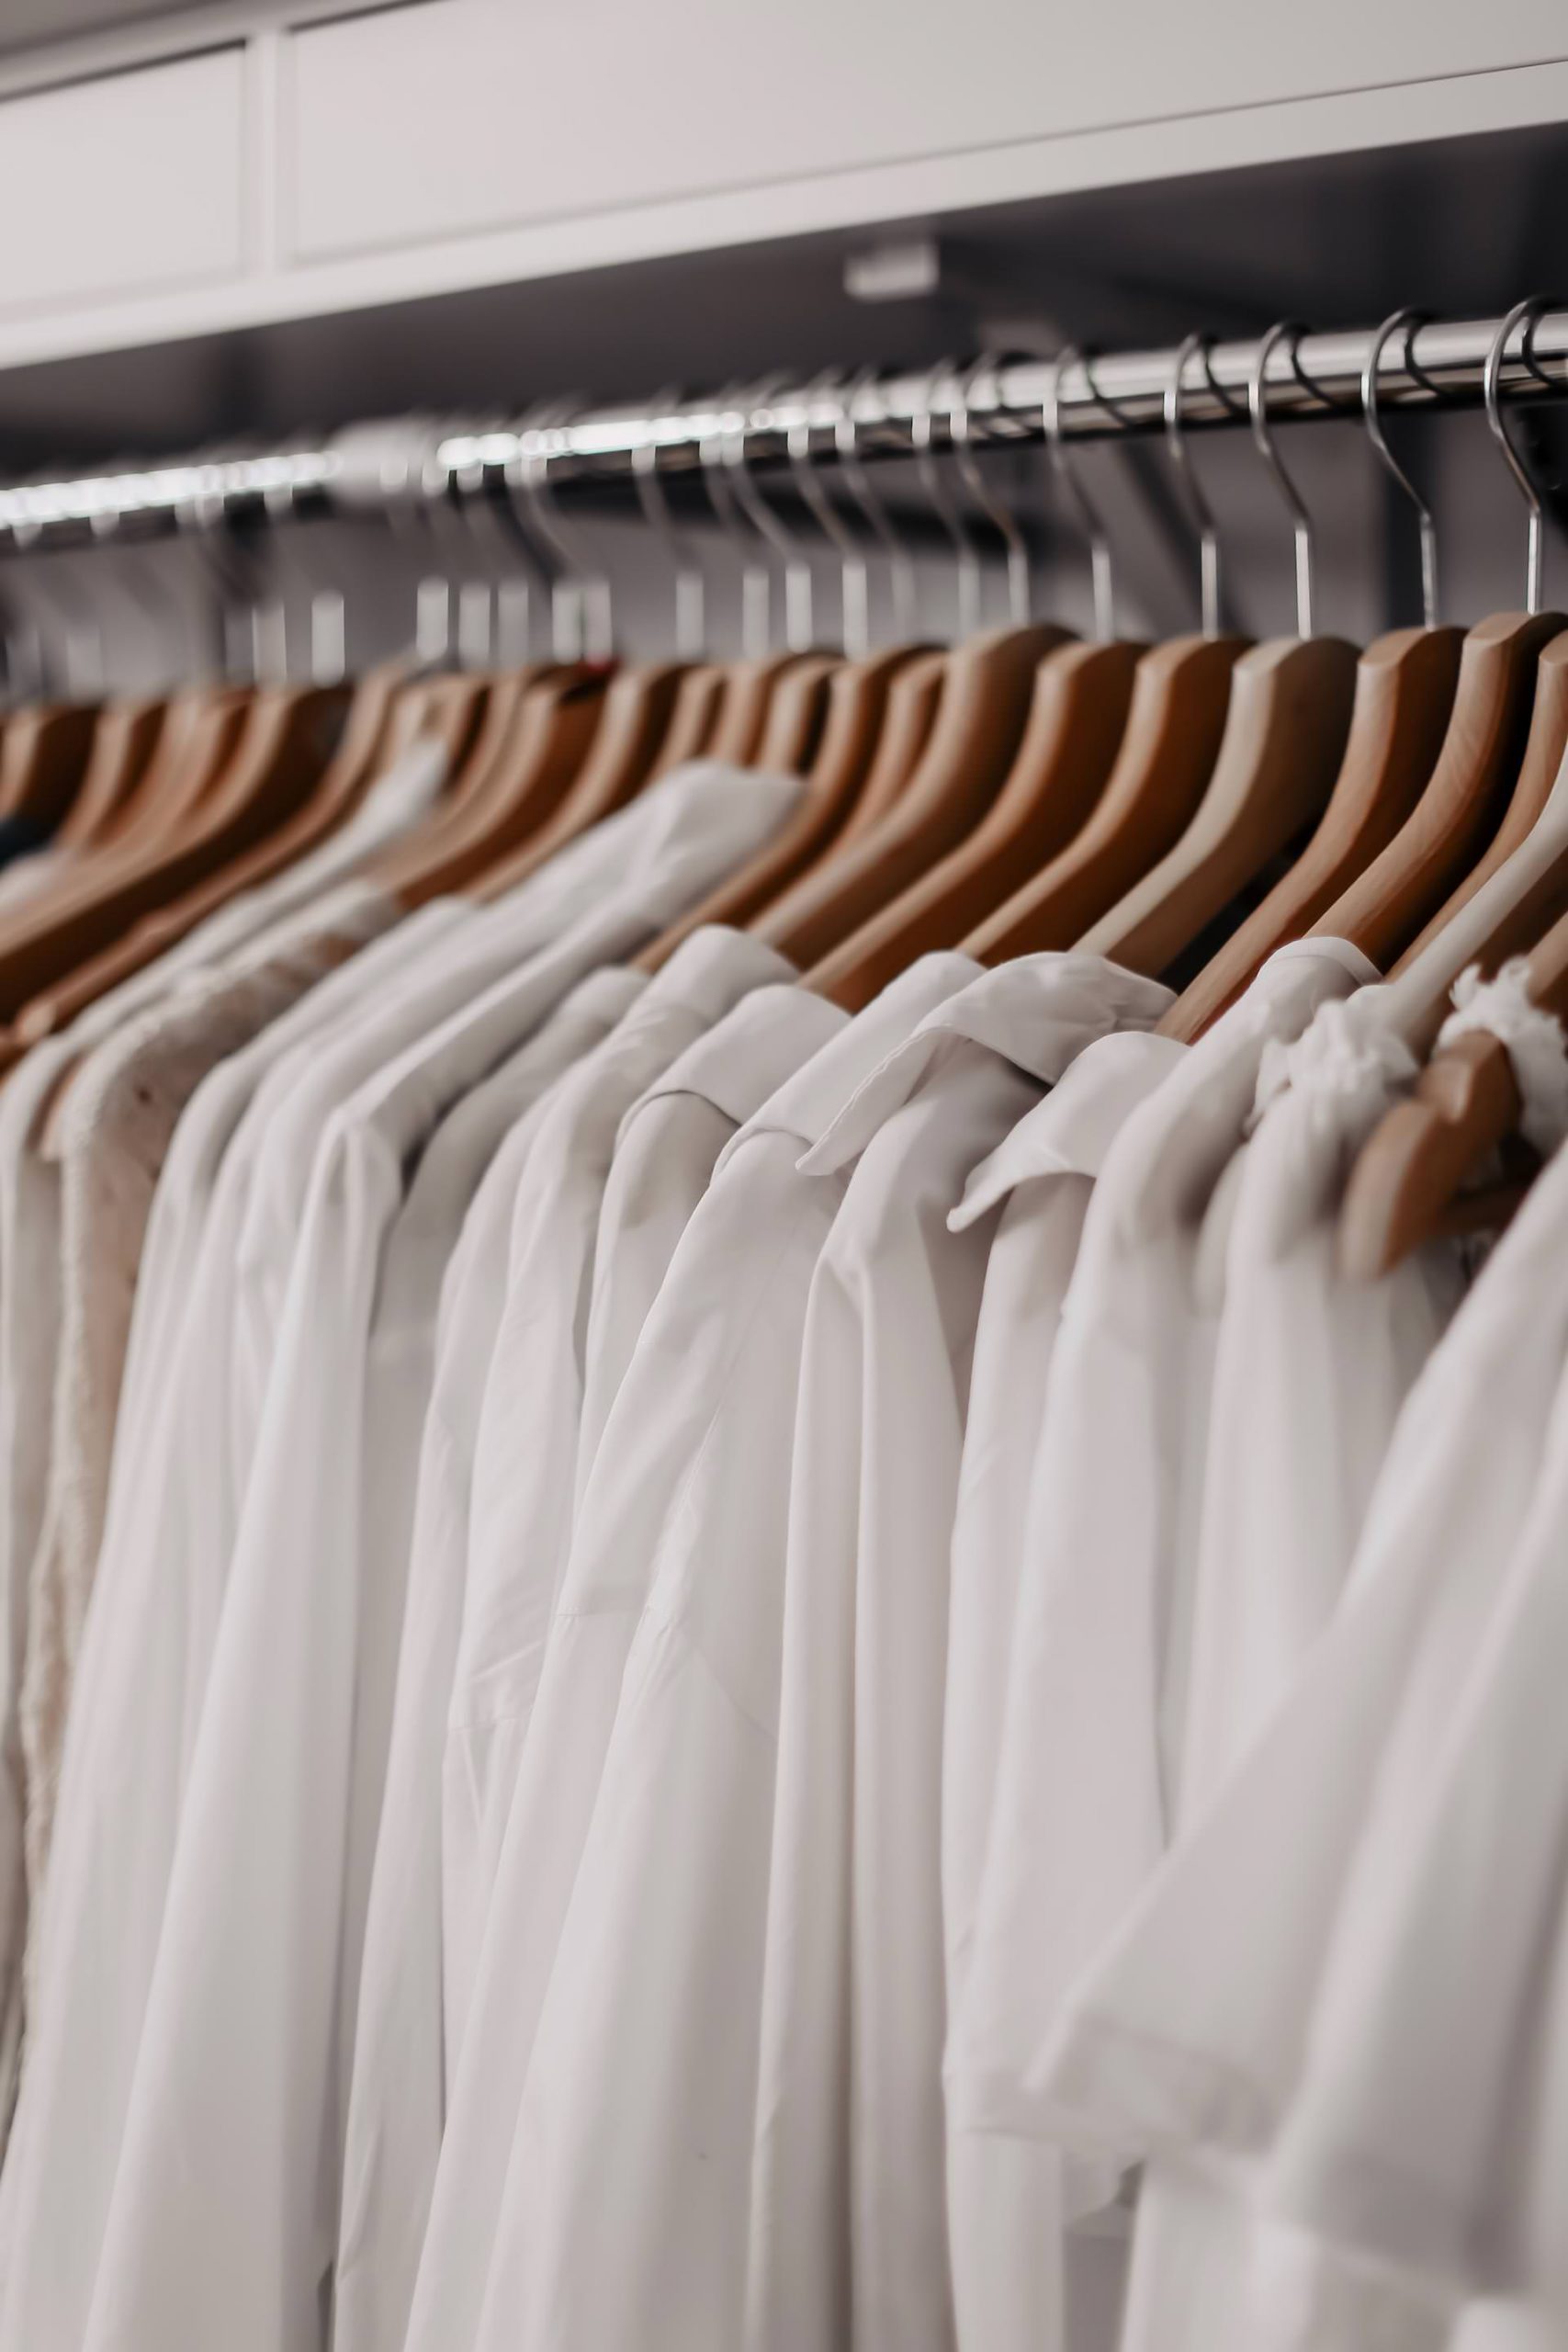 Frühjahrsputz im Kleiderschrank! Wie ich mich am leichtesten von Klamotten trennen kann und meine erprobten Tipps zum Ausmisten, verrate ich dir am Modeblog www.whoismocca.com #kleiderschrankausmisten #fashiondetox #closetcleaning 